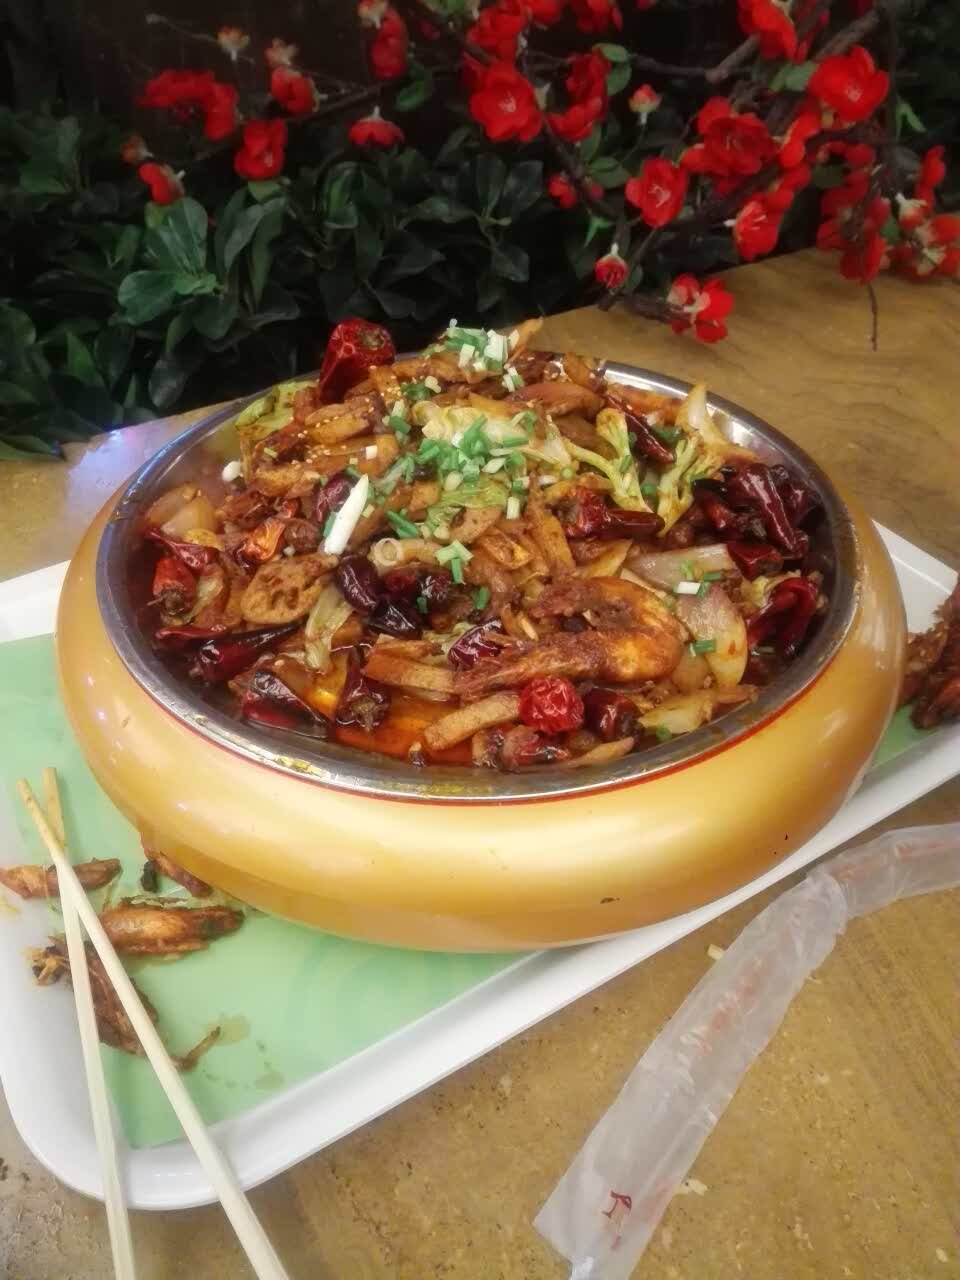 2019干锅鱼庄(荟聚店)美食餐厅,还不错,牛肉一般 虾还